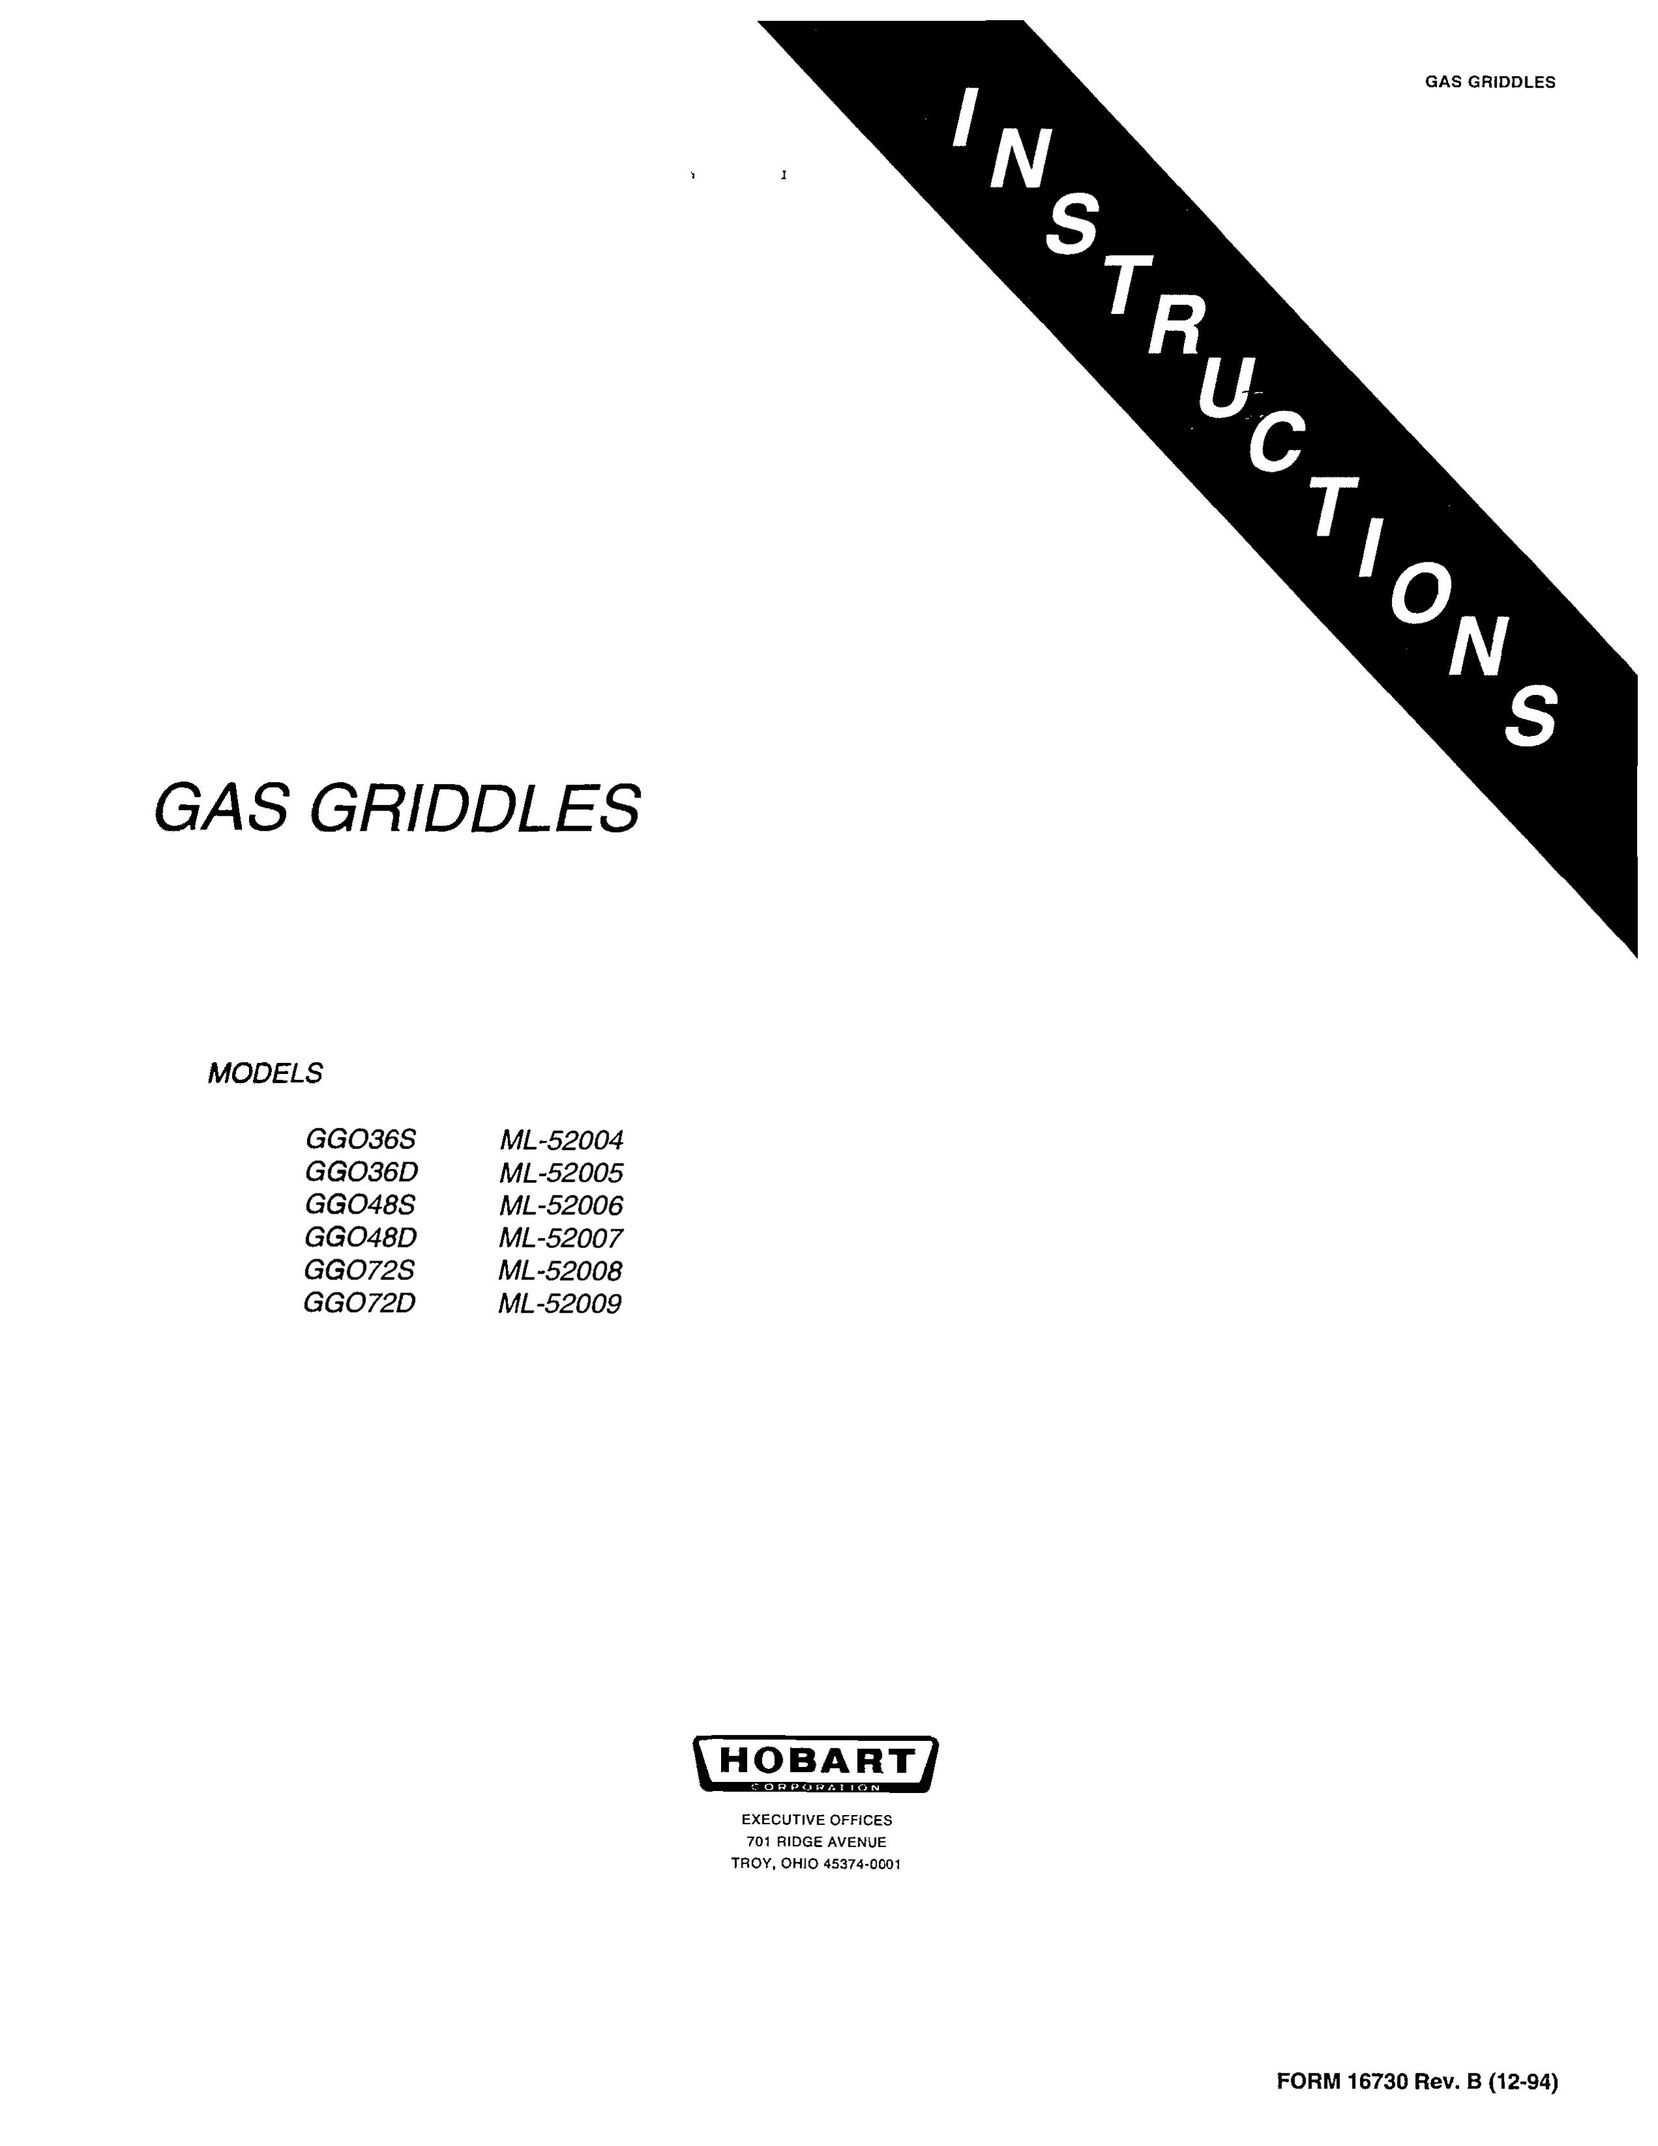 Hobart GGO72D Griddle User Manual